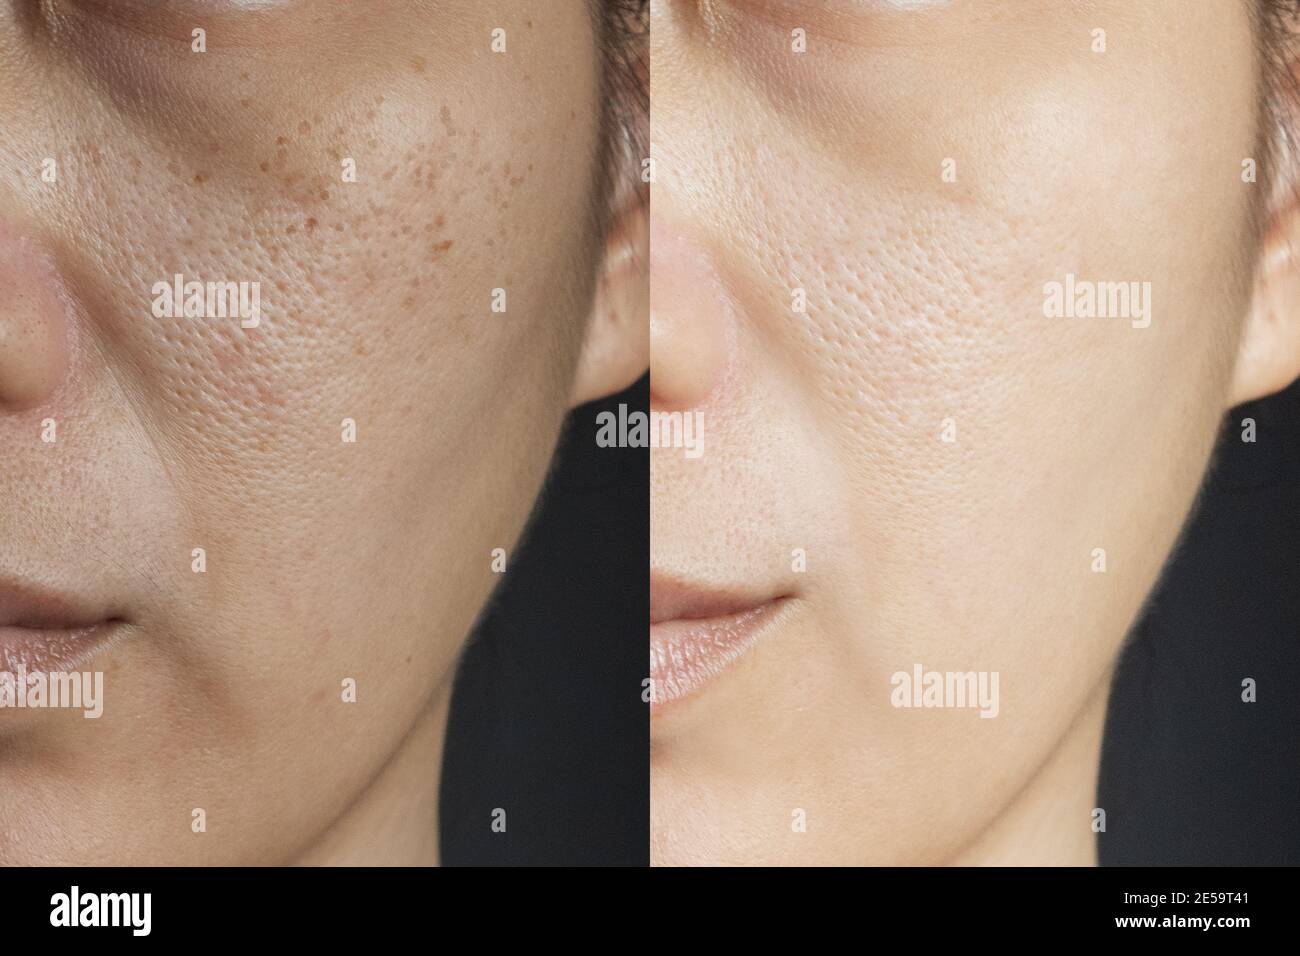 Zwei Bilder vergleichen Wirkung vor und nach der Behandlung. Haut mit Problemen der Sommersprossen, Pore, stumpfe Haut und Falten vor und nach der Behandlung Stockfoto